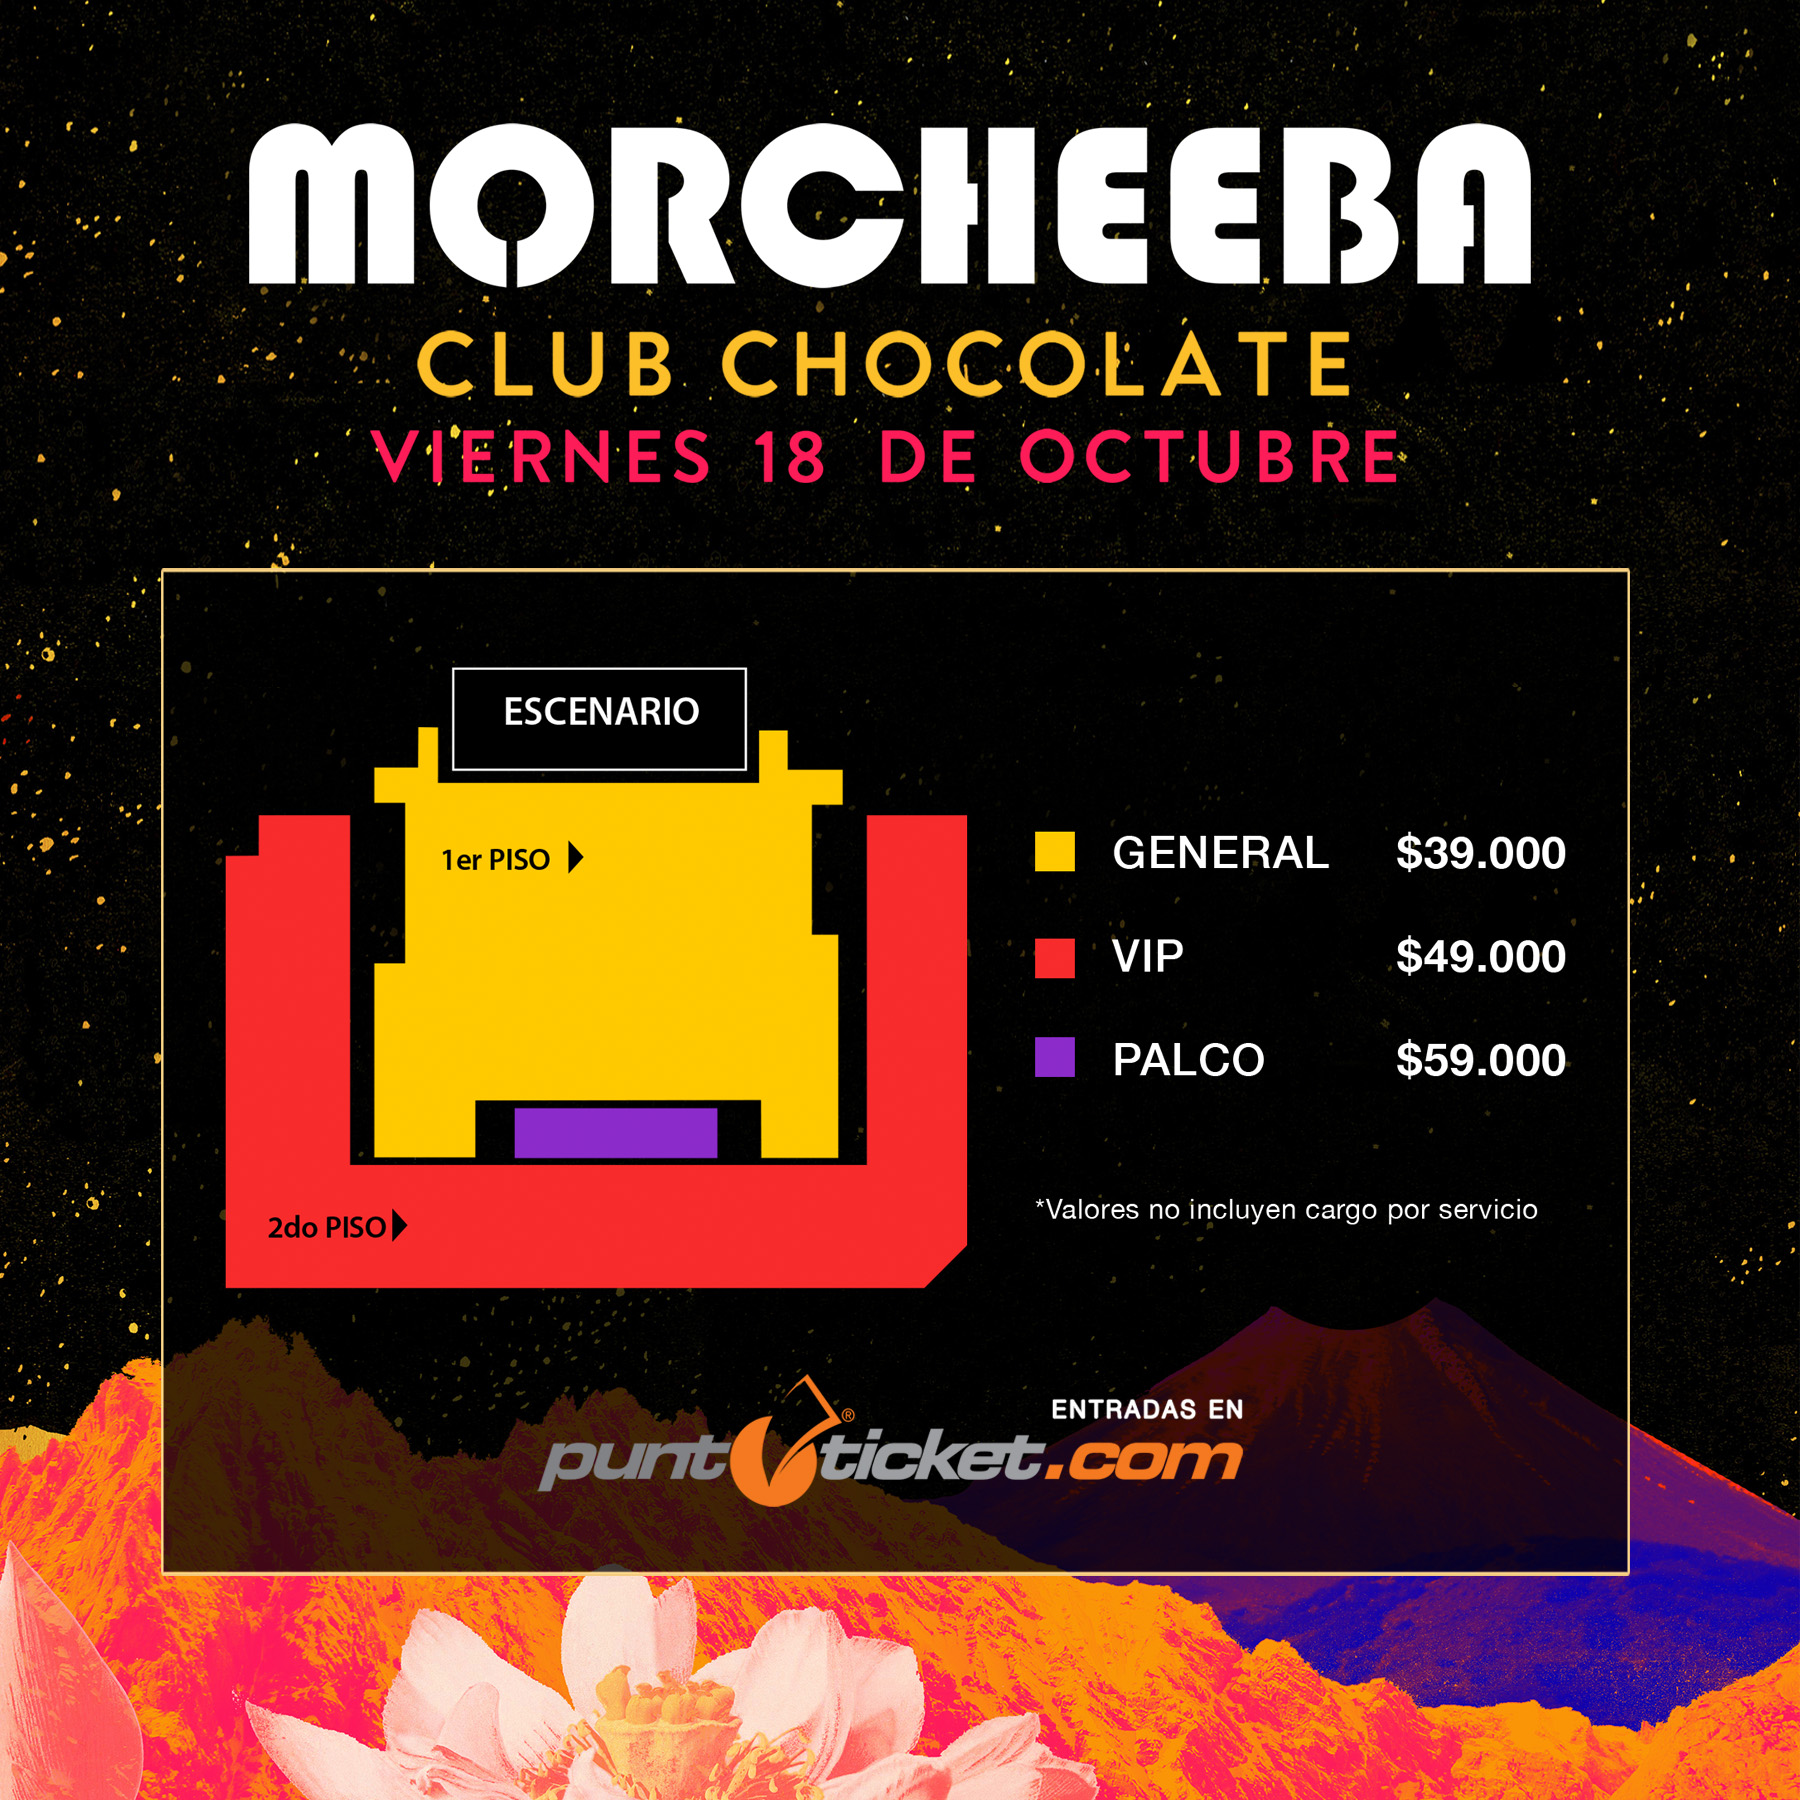 morcheeba club chocolate chile 2019 octubre